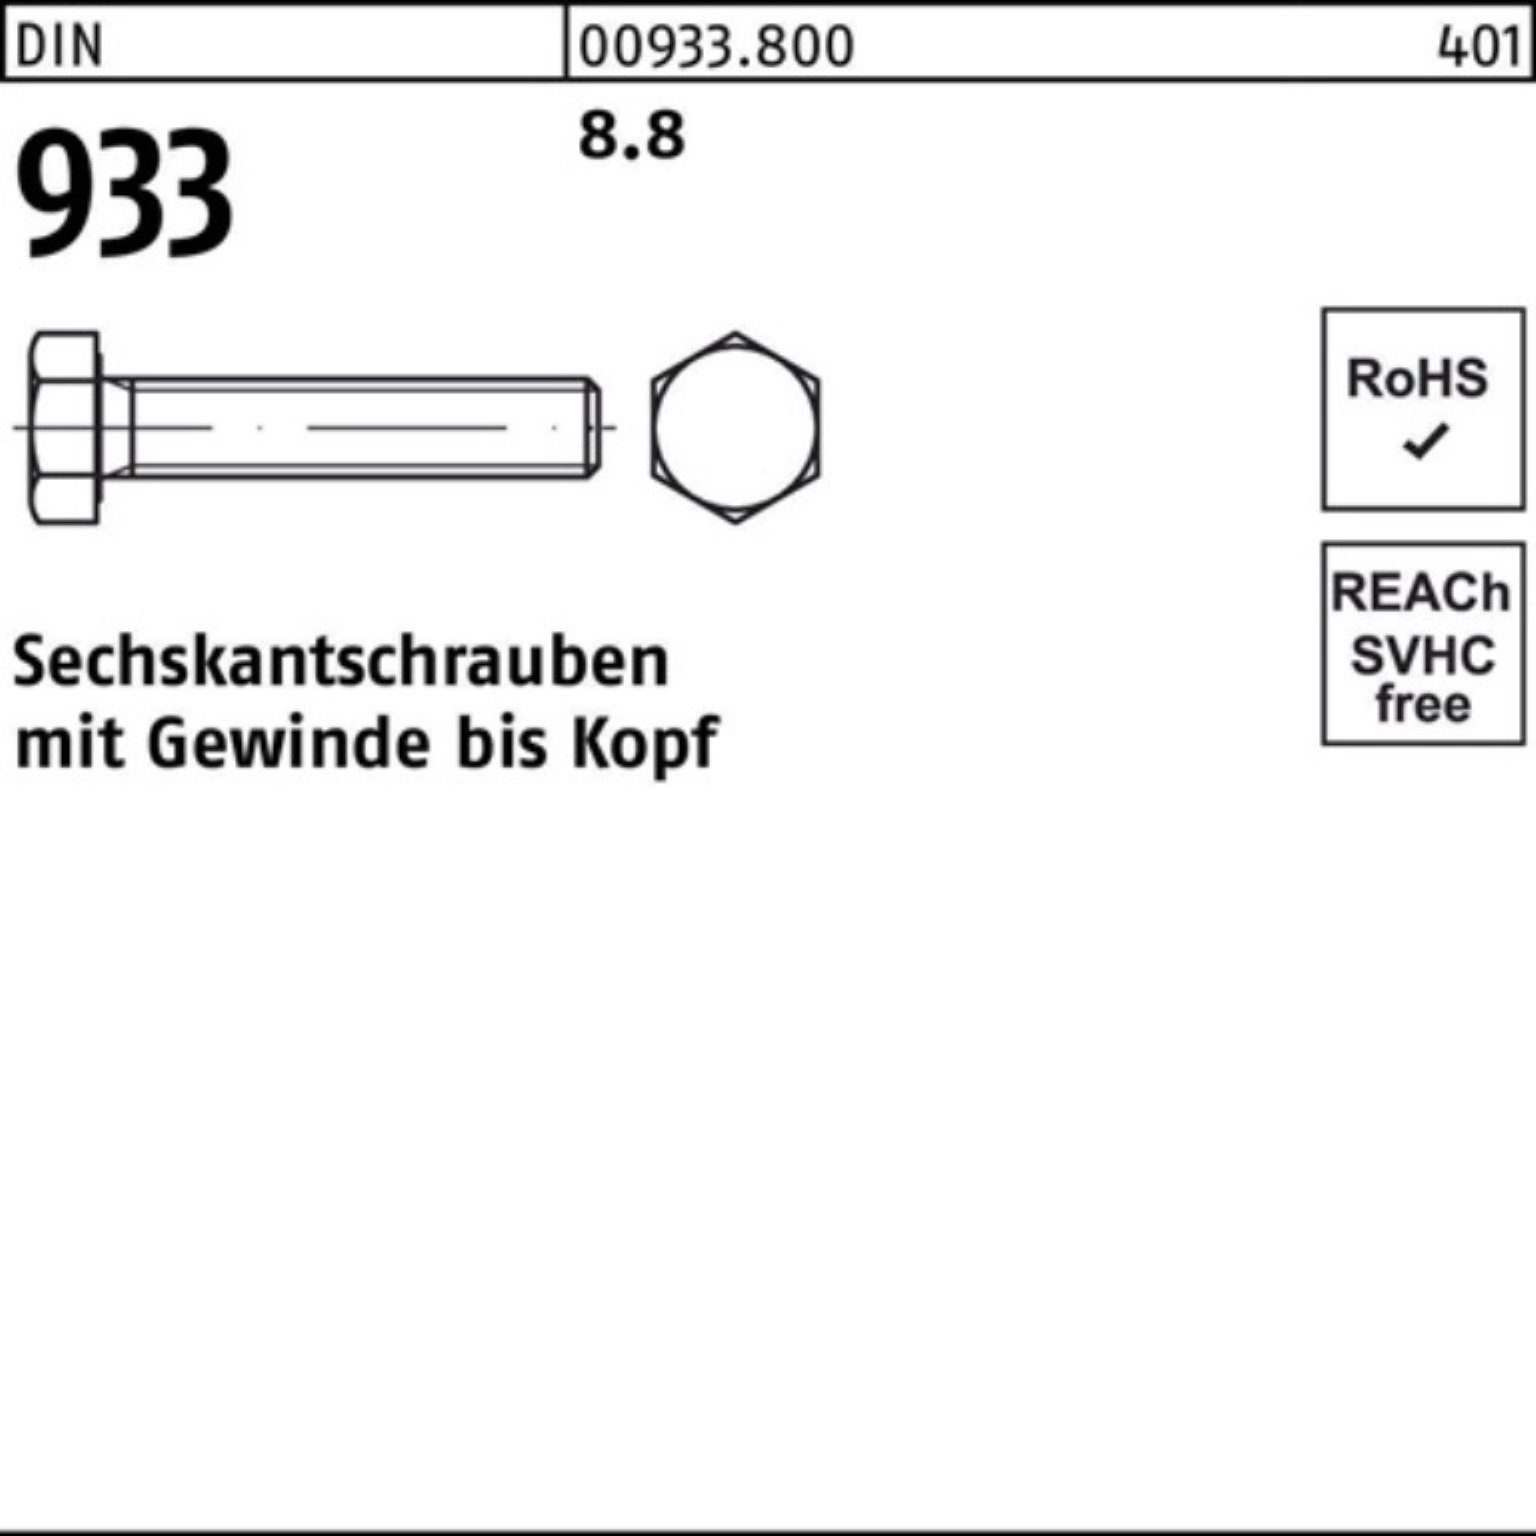 Reyher Sechskantschraube 100er 933 Stück 10 65 8.8 DIN Pack Sechskantschraube M27x DIN VG 933